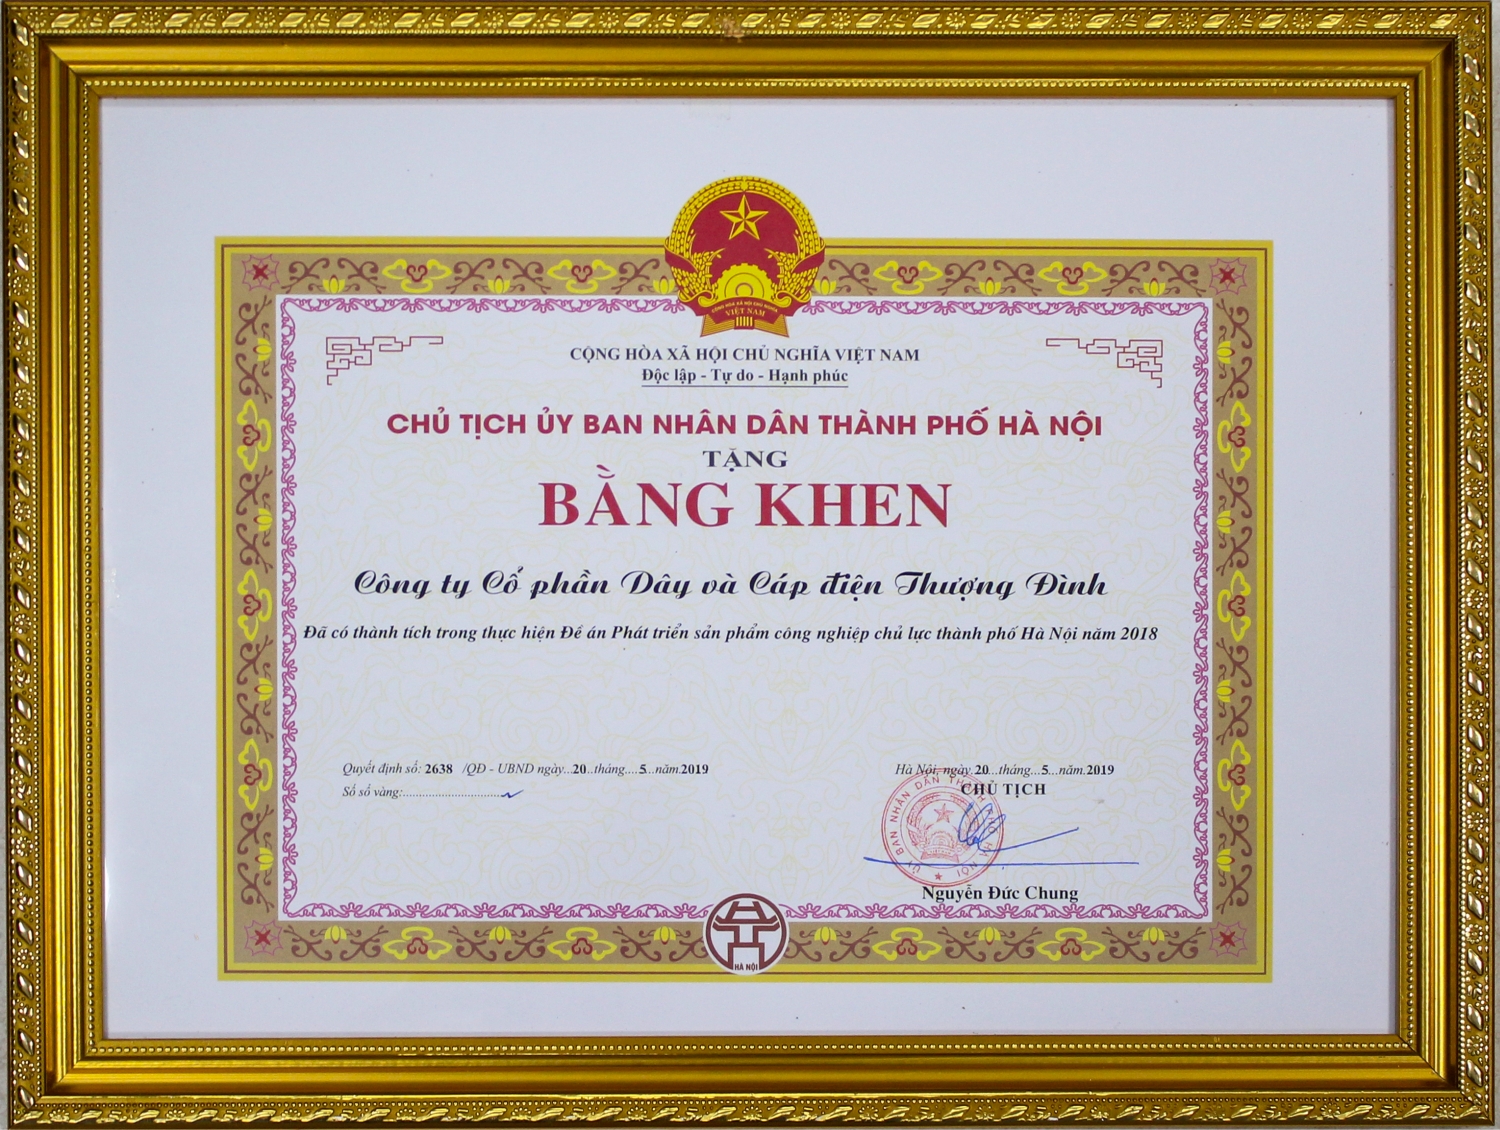 Bằng khen của chủ tịch UBND TP Hà Nội